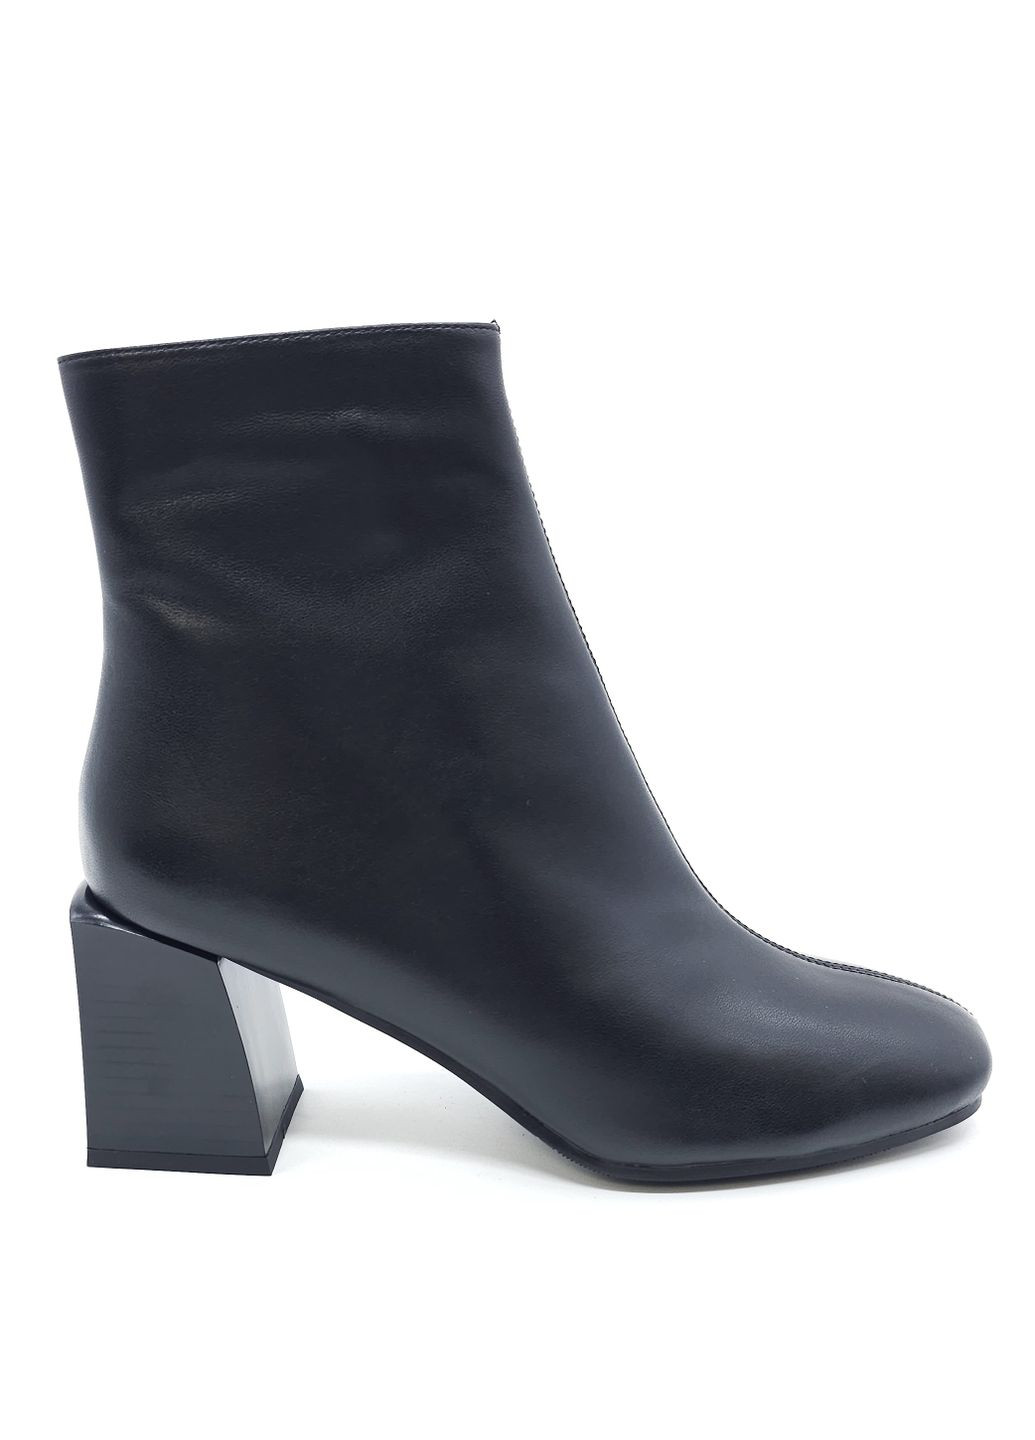 Жіночі черевики чорні шкіряні AL-14-6 27 см (р) Anna Lucci (266777854)